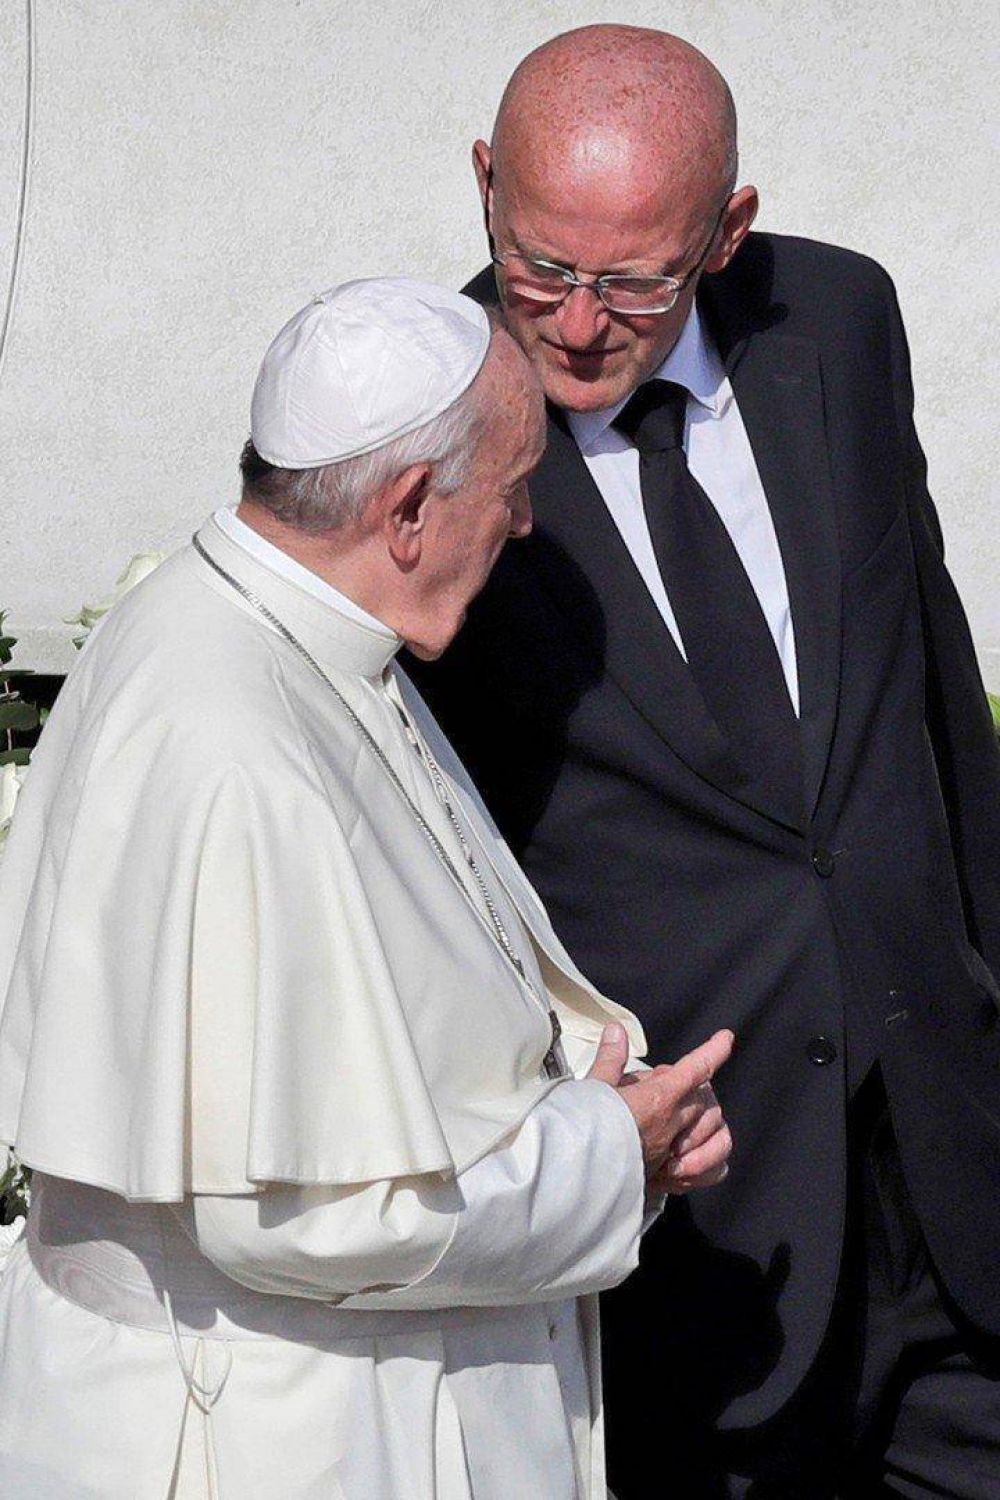 Escndalo en el Vaticano: echan al ngel guardin del papa Francisco